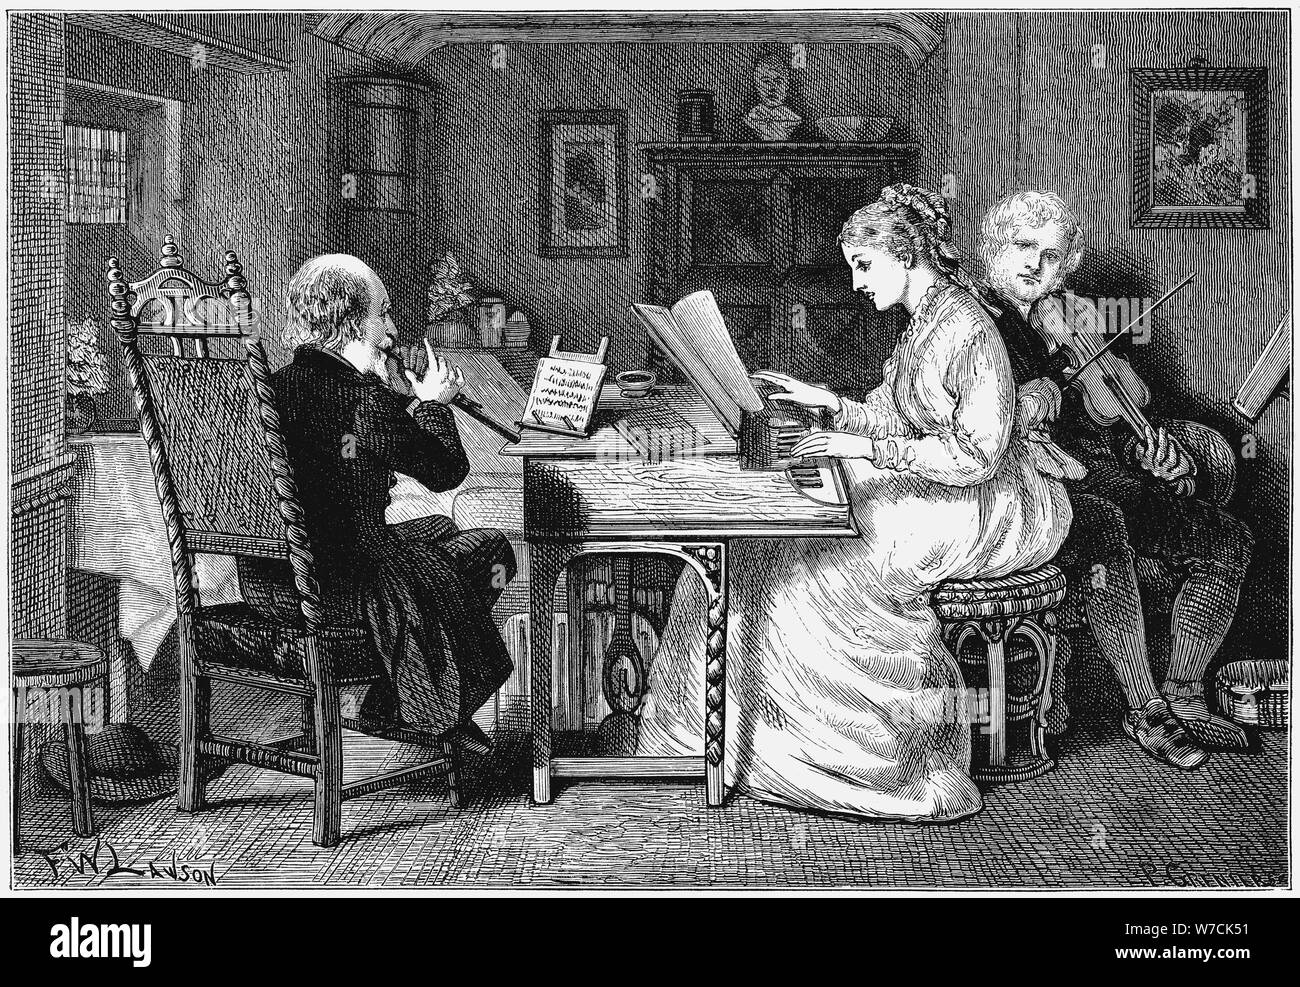 Hacer música, Londres, 1874. Artista: Francis Wilfrid Lawson Foto de stock